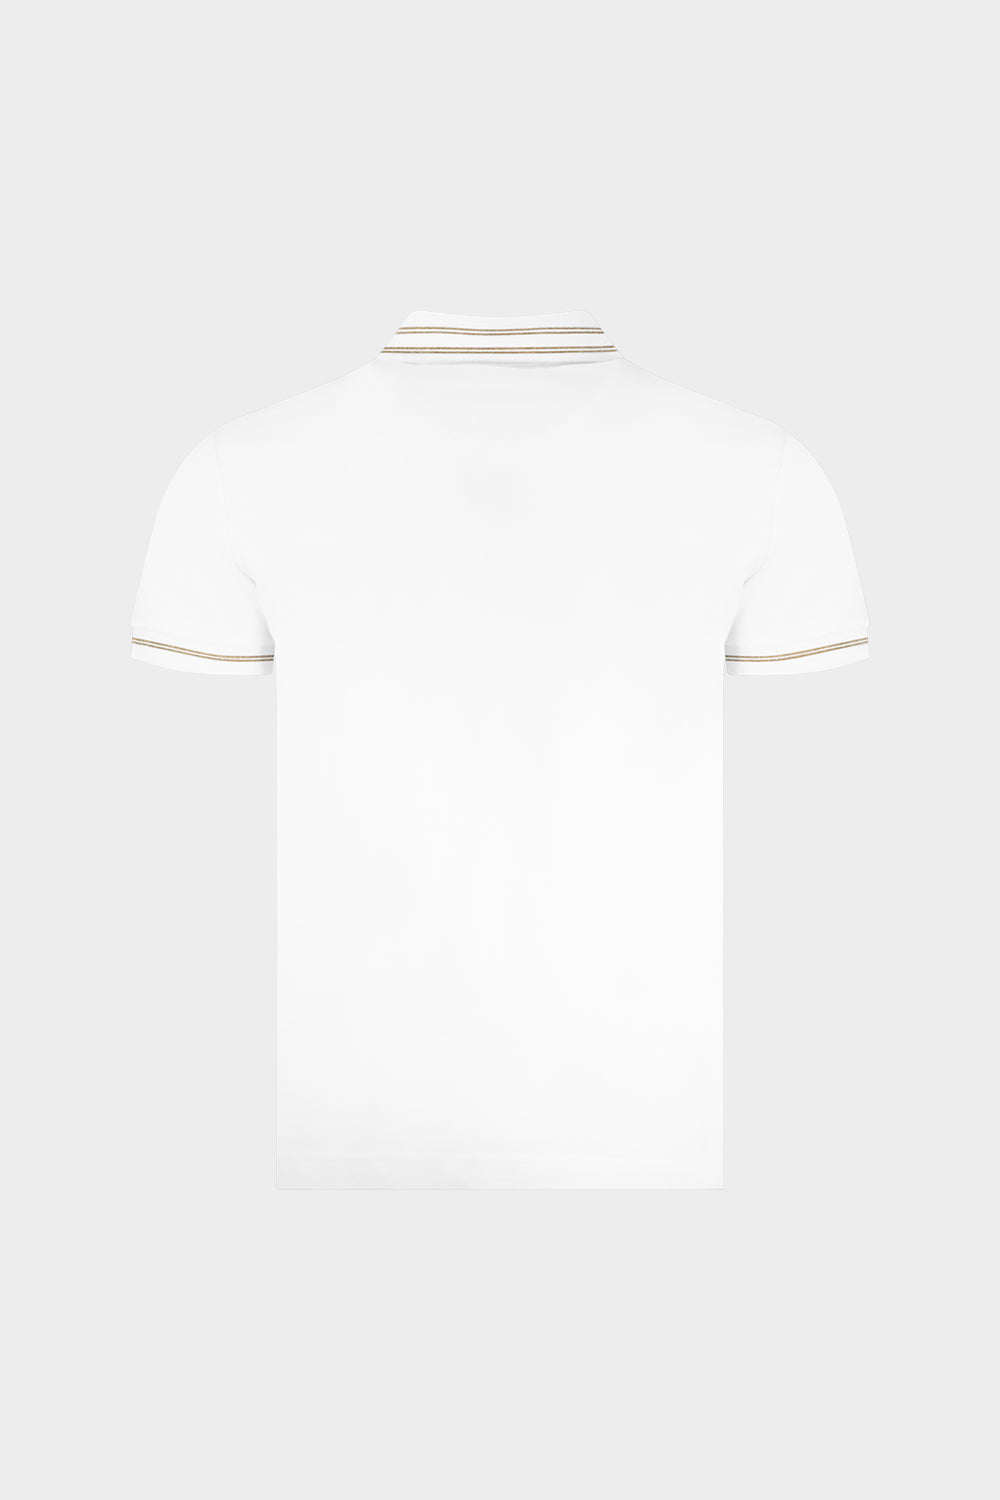 חולצת פולו לגברים שמש VERSACE Vendome online | ונדום .